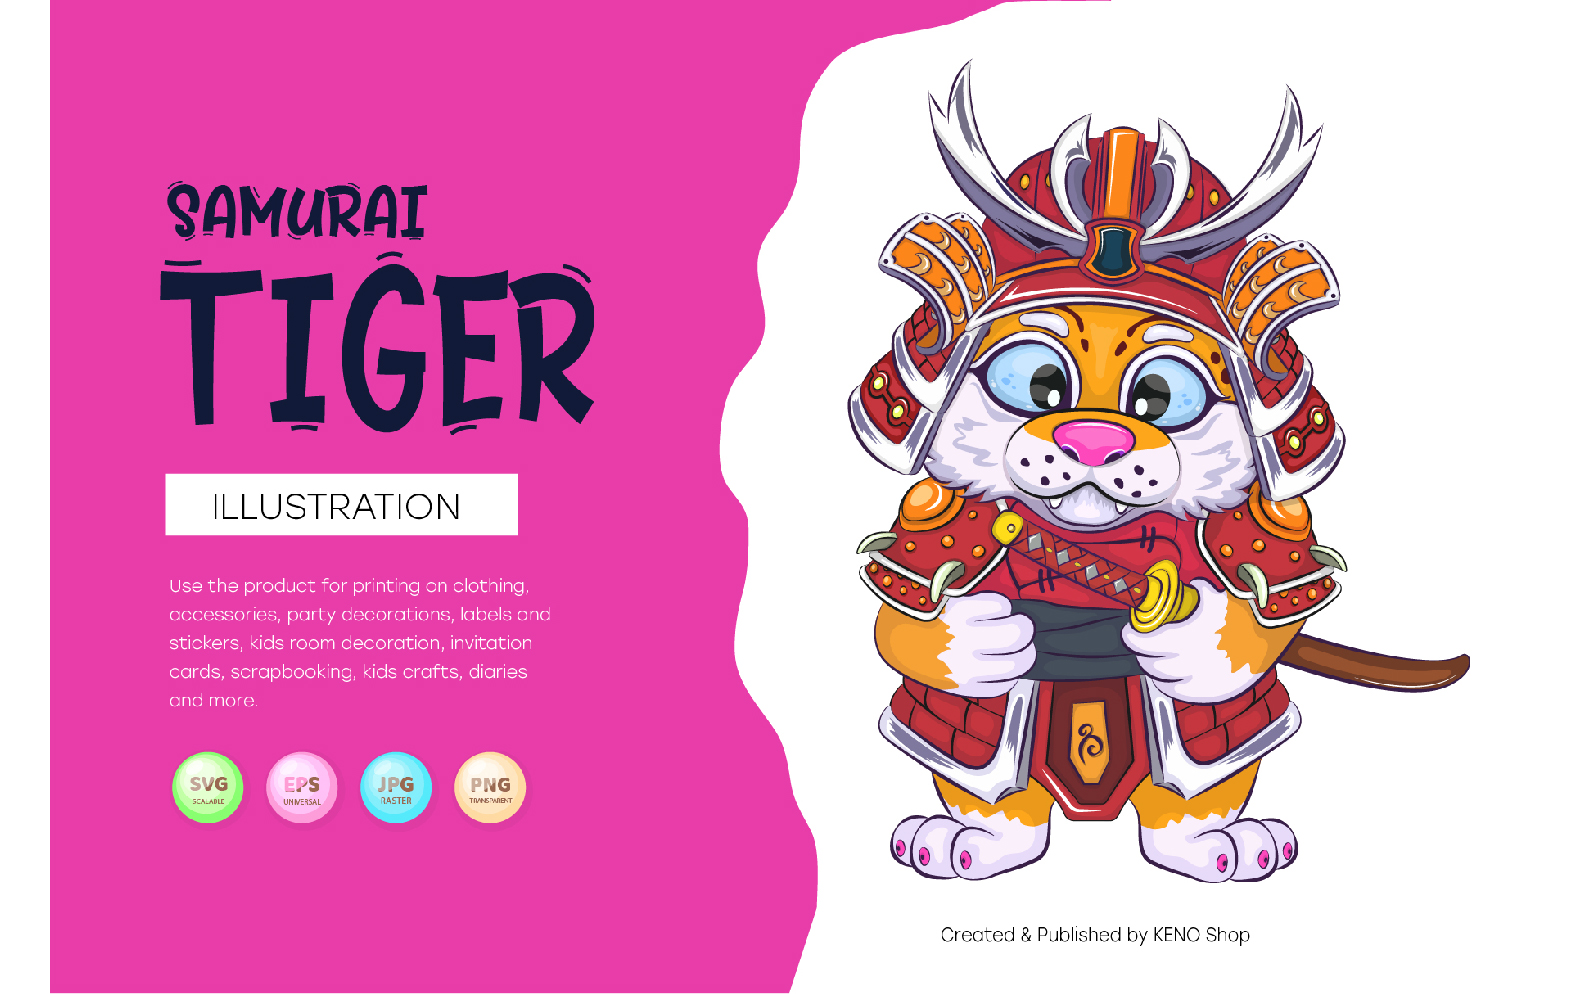 Cartoon samurai tiger, T-Shirt, PNG, SVG.